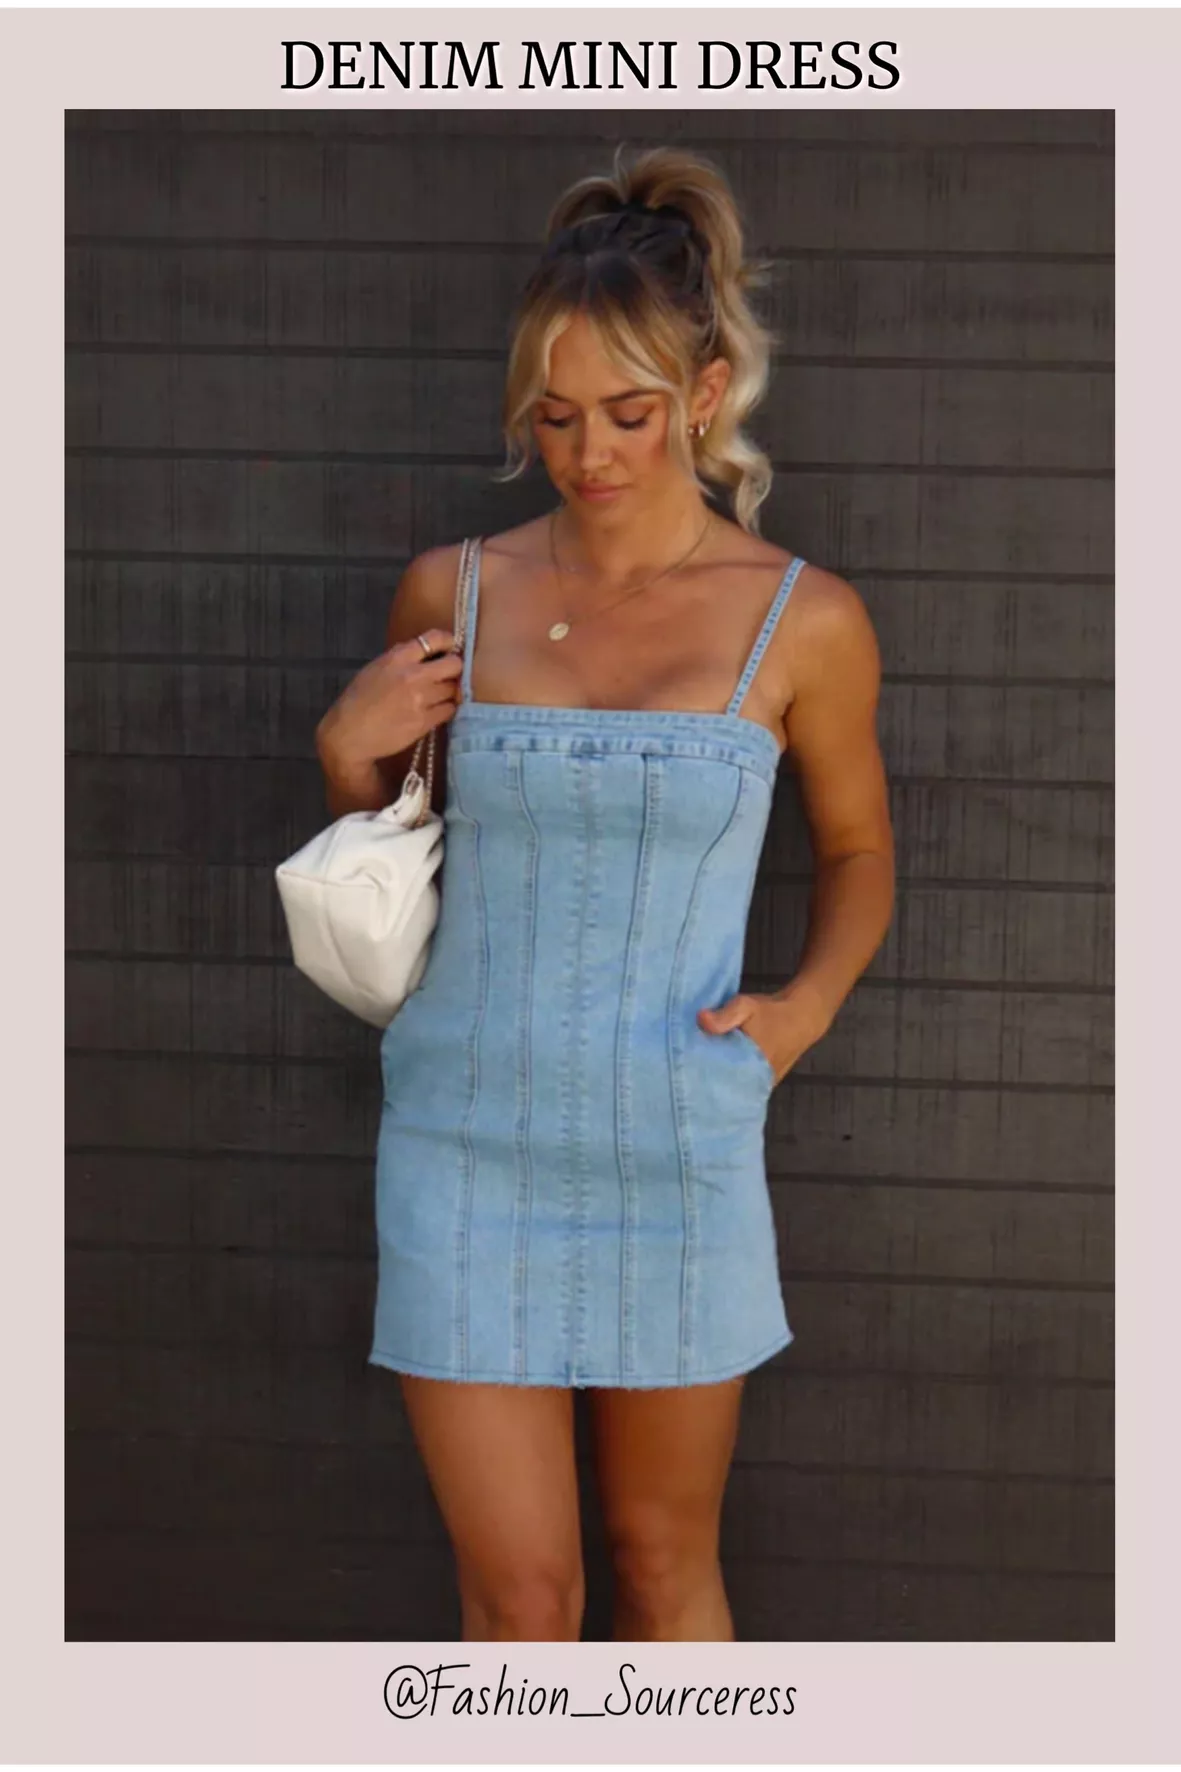 Dallas Denim Mini Dress curated on LTK